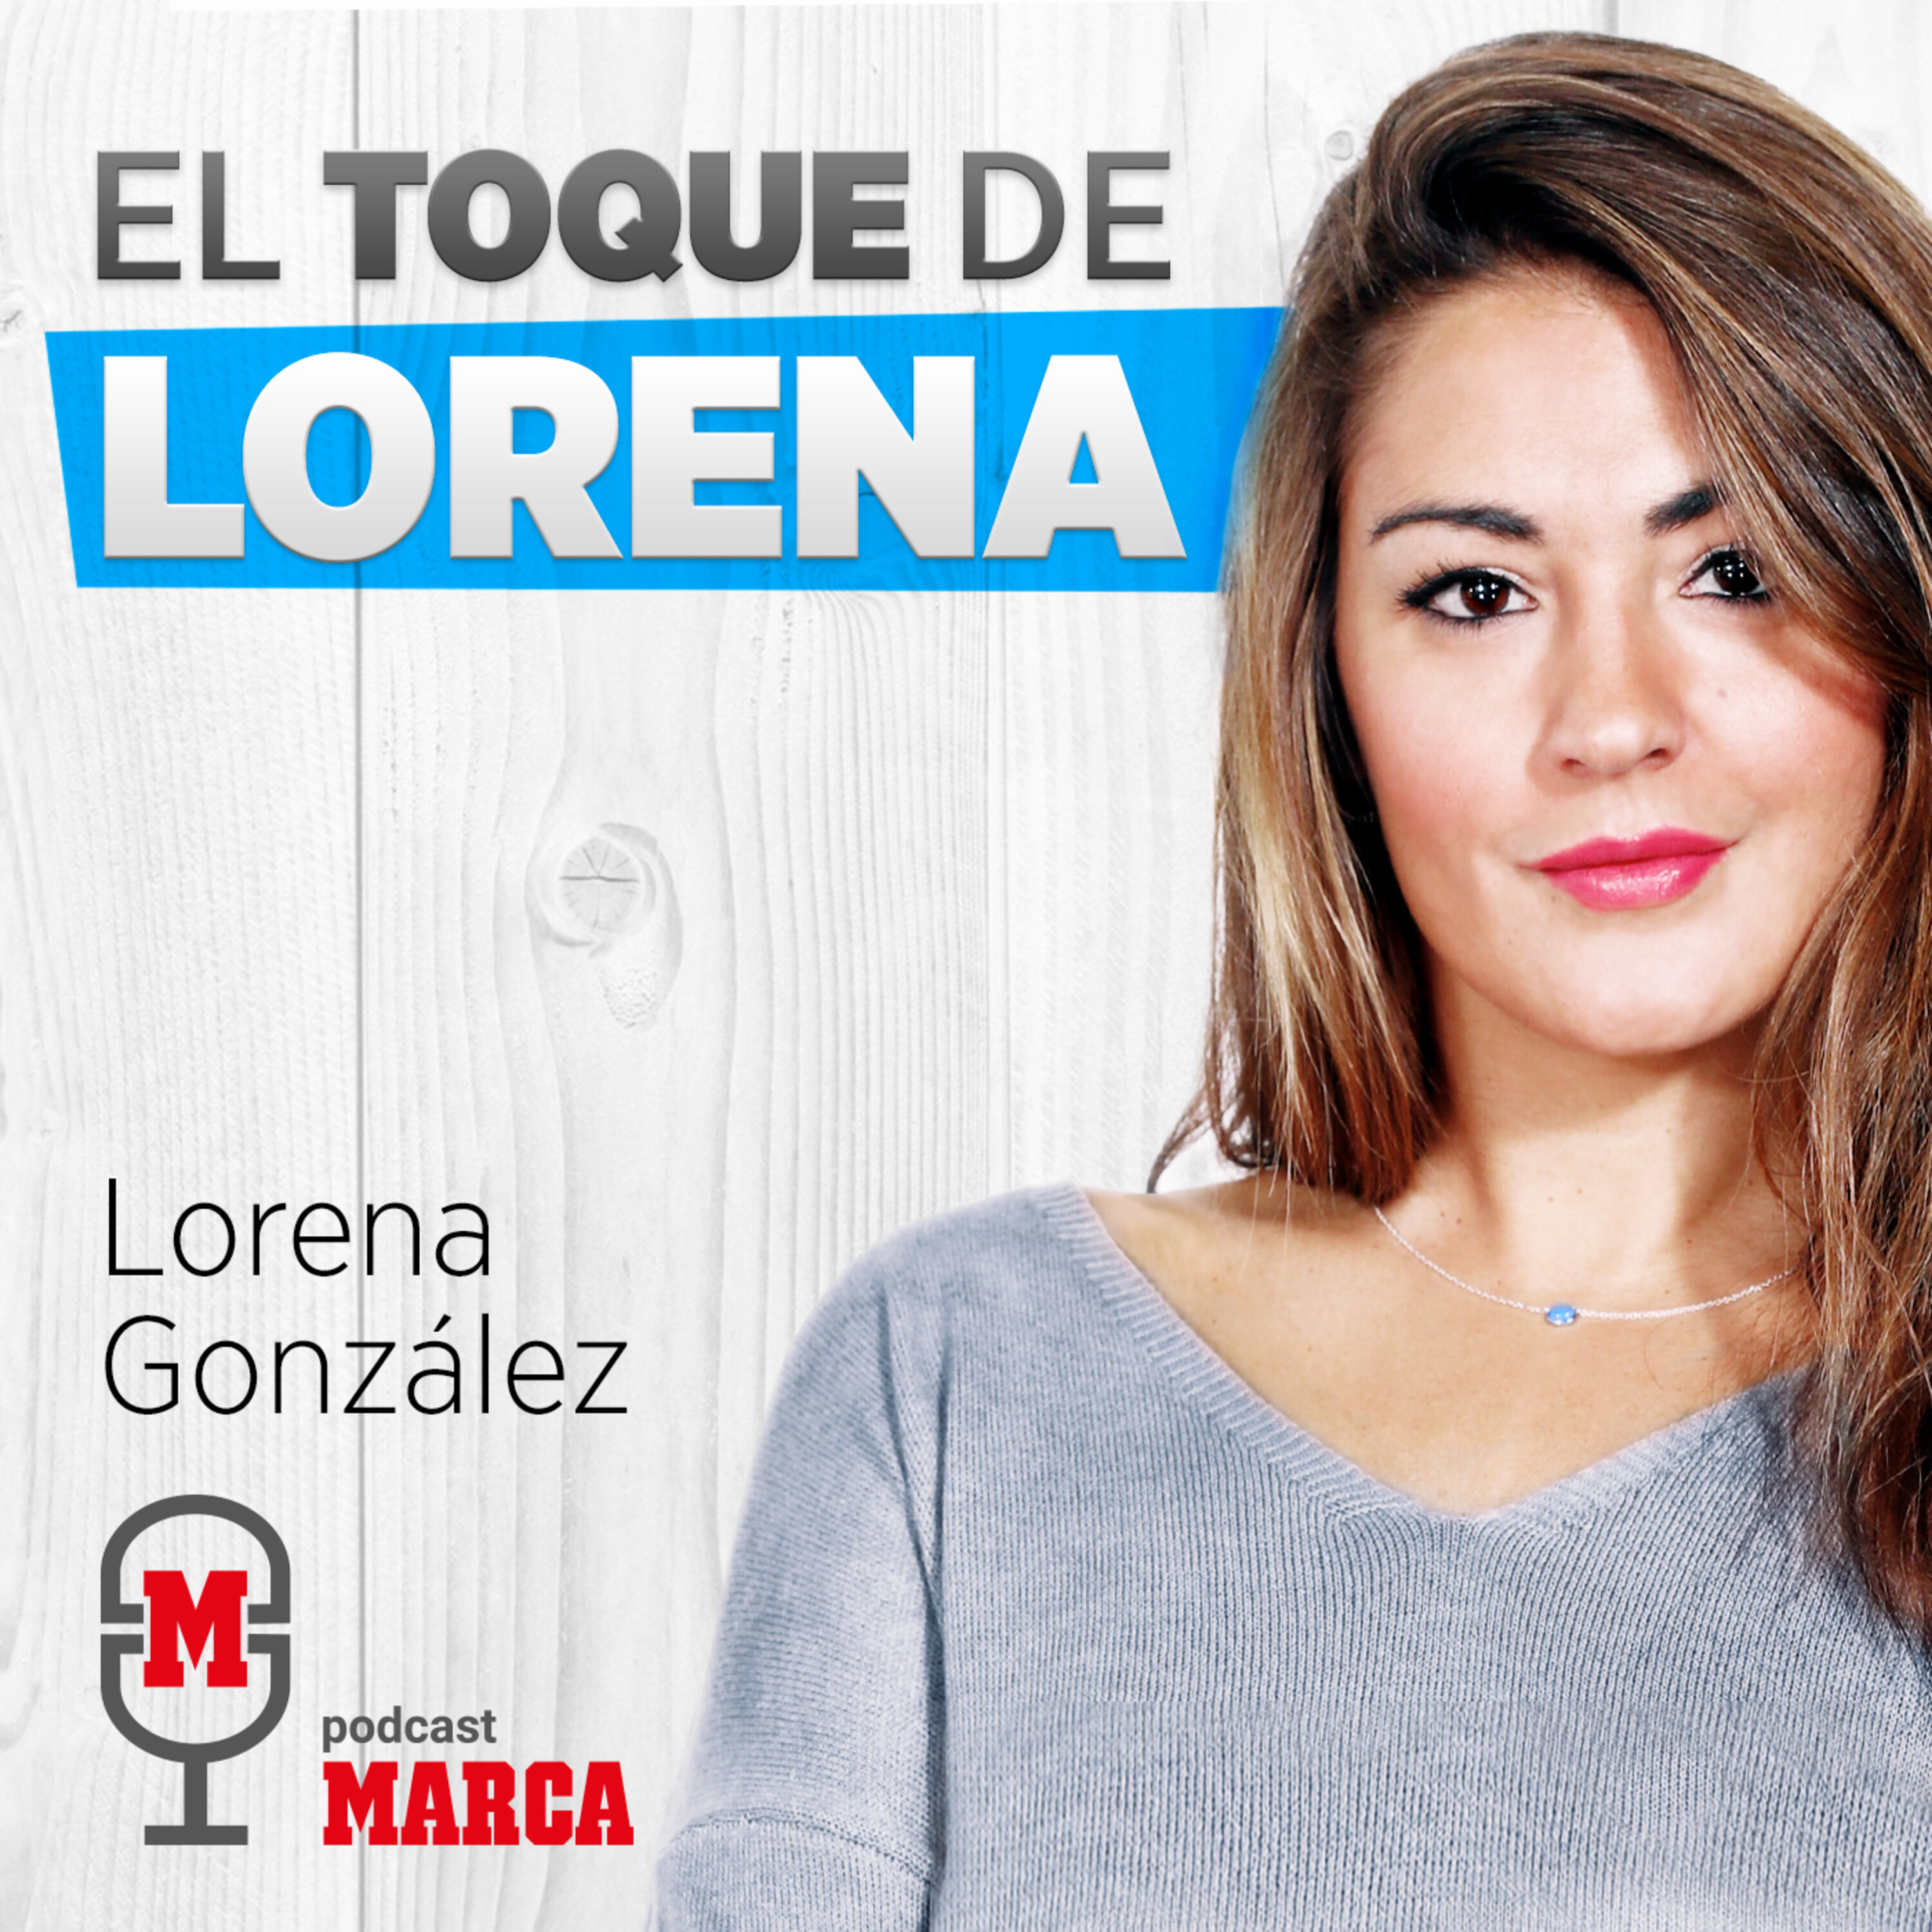 El toque de Lorena